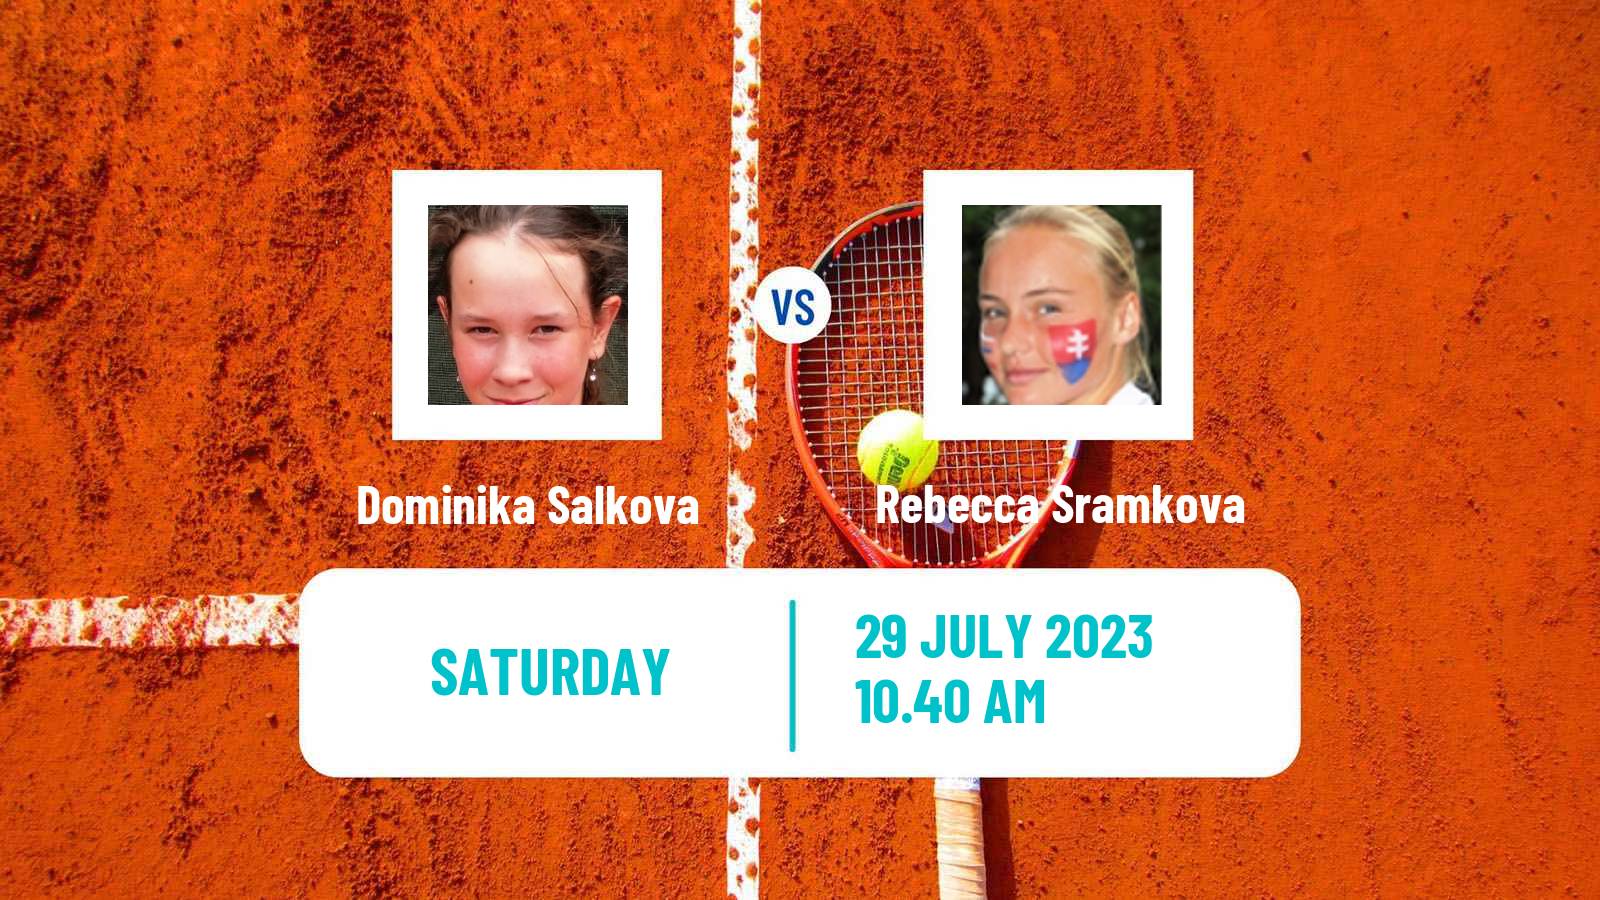 Tennis WTA Prague Dominika Salkova - Rebecca Sramkova